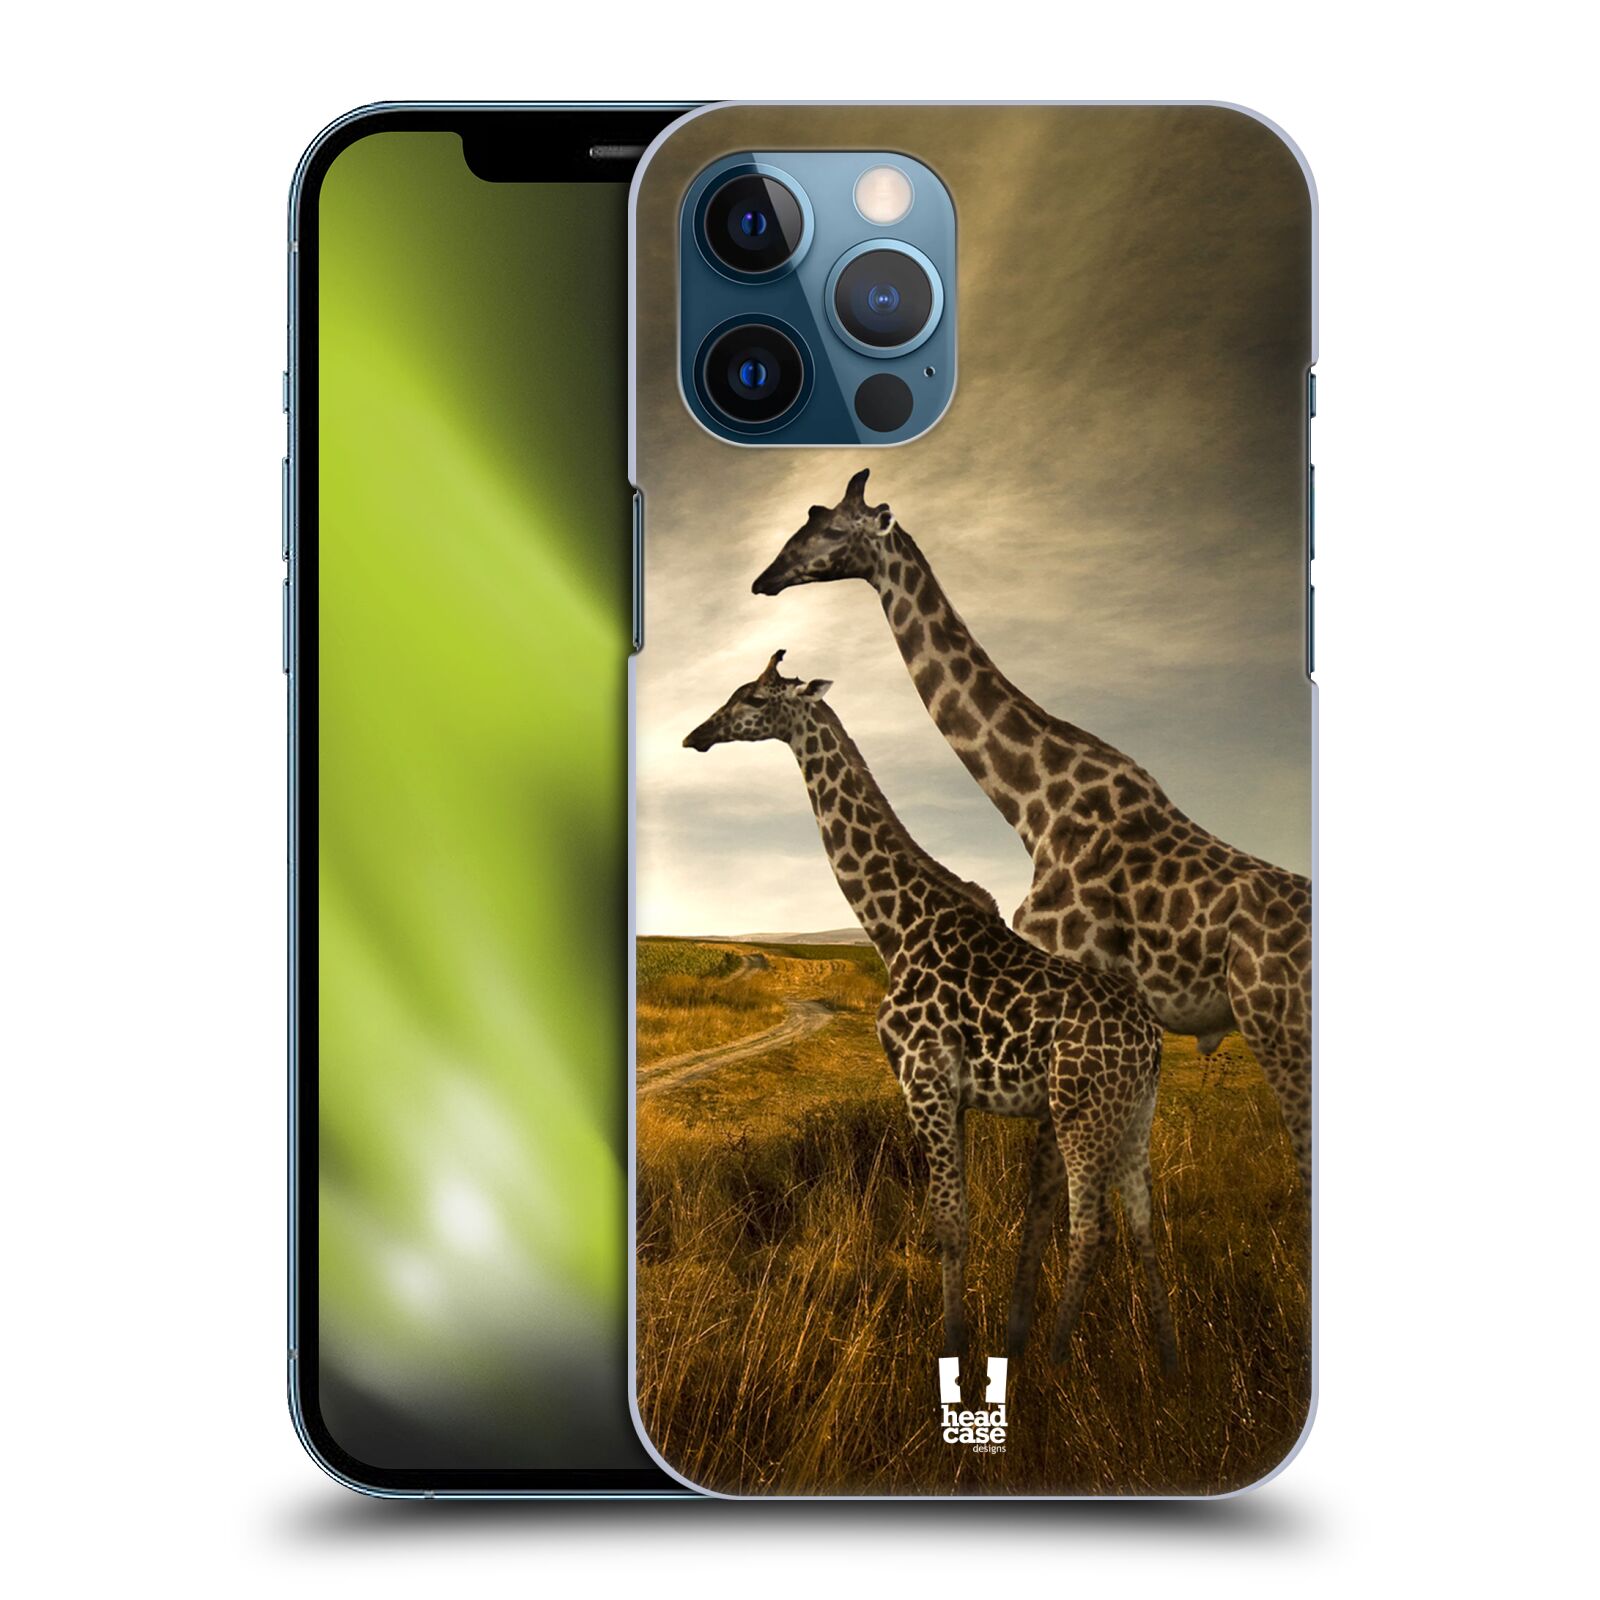 Zadní obal pro mobil Apple iPhone 12 PRO MAX - HEAD CASE - Svět zvířat žirafy